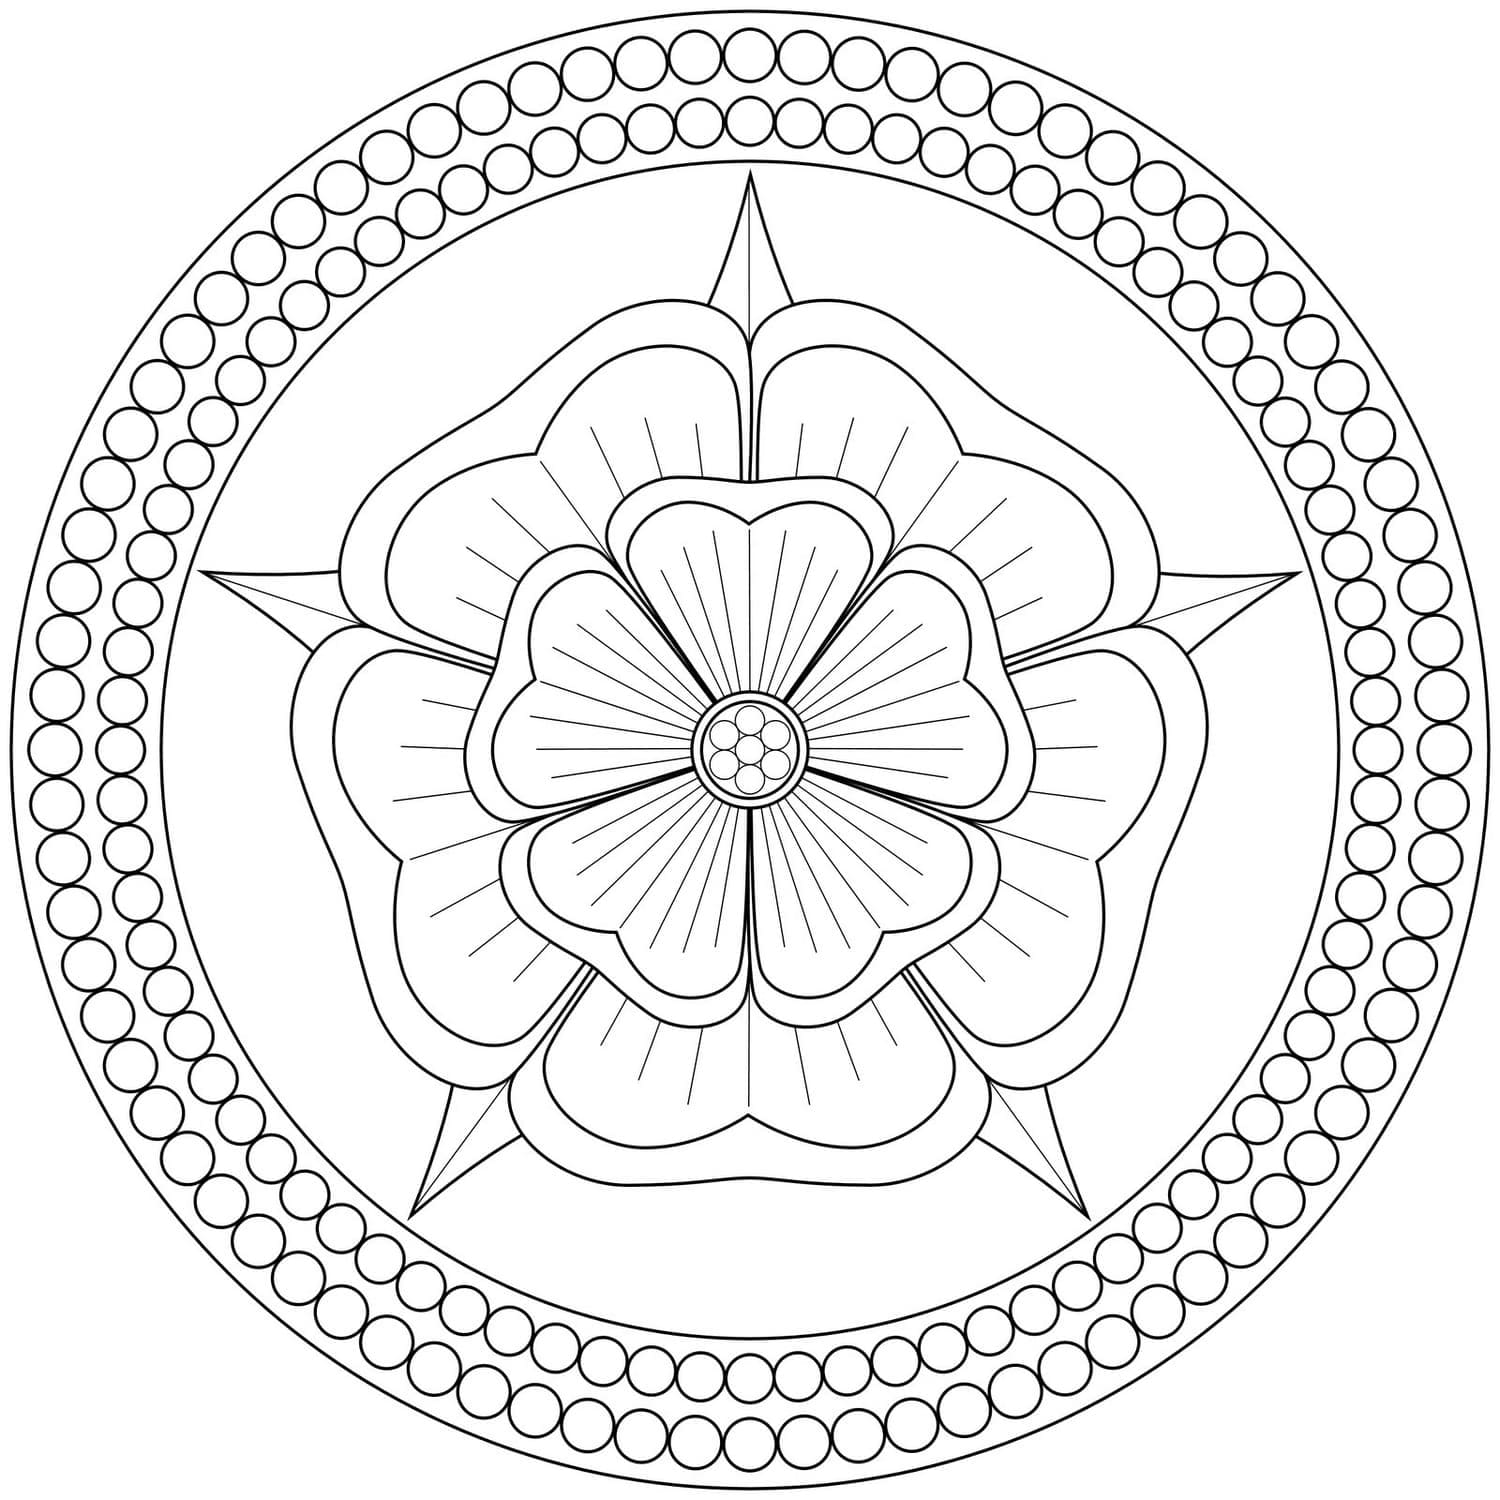 Ausmalbilder Mandala Blumen   Ausmalbilder zum ausdrucken